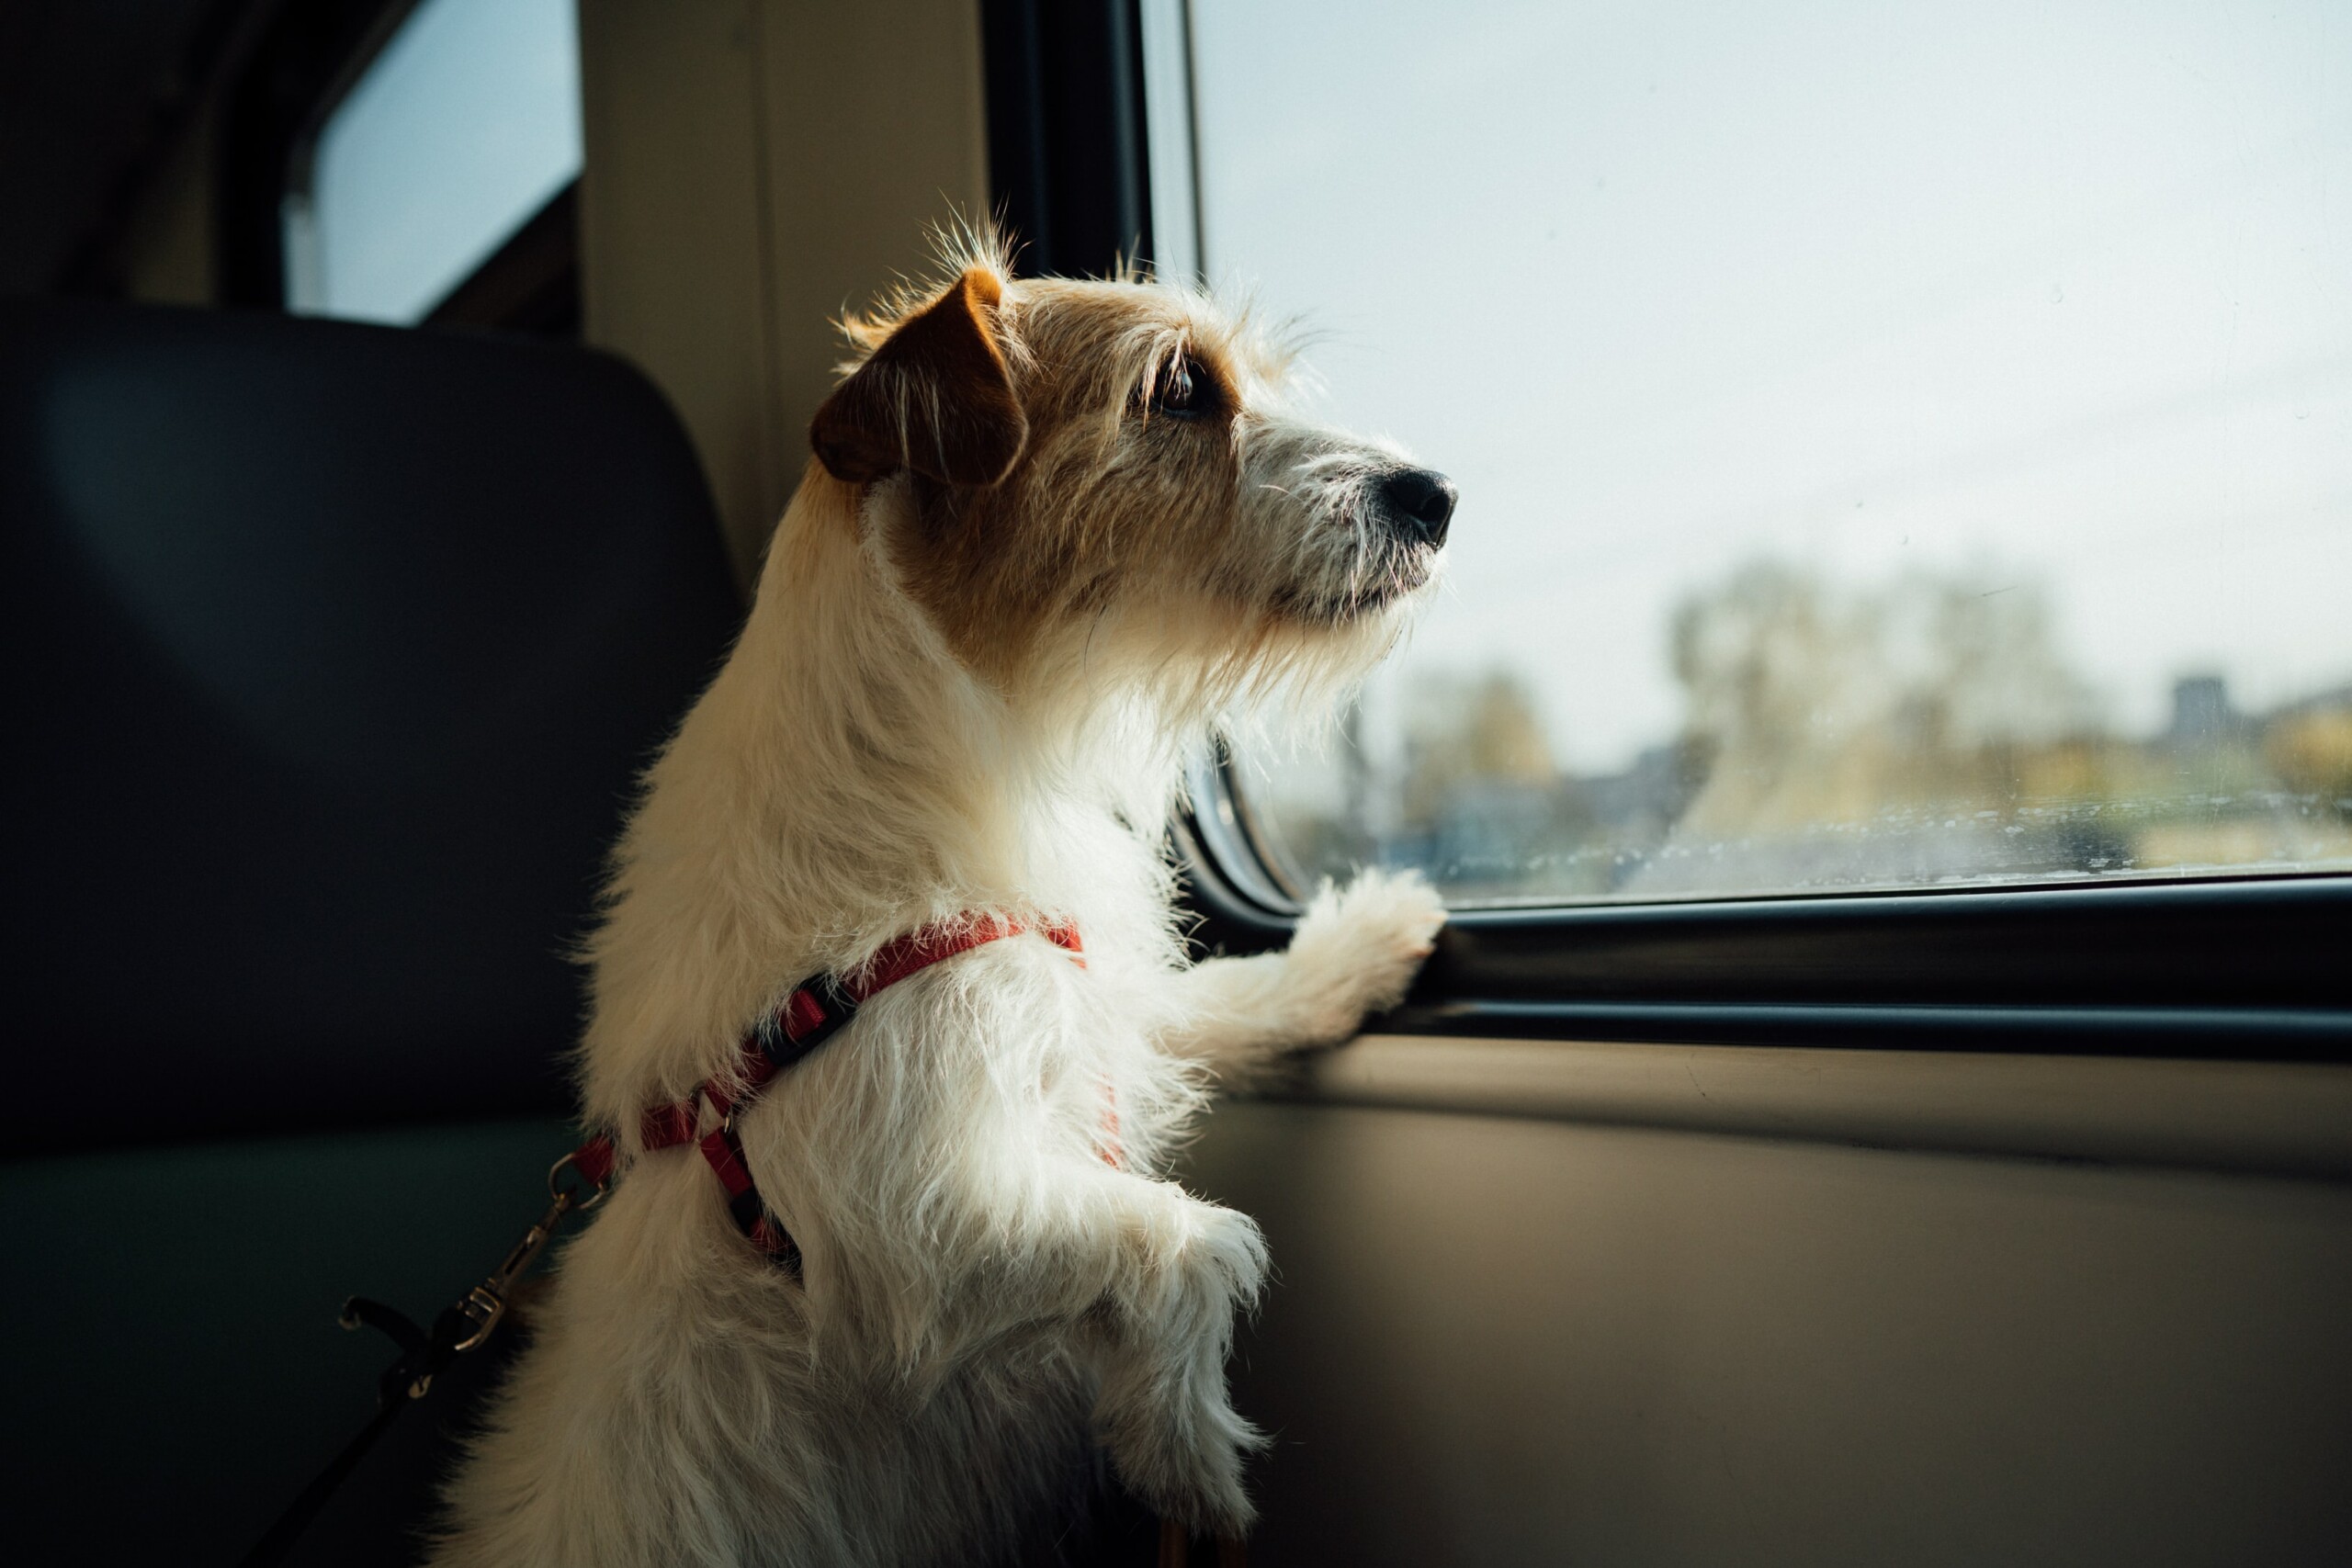 Dicas para quem vai viajar sozinho de ônibus, avião ou carro | Cachorro com peitoral olhando a paisagem pela janela do ônibus | Conexão123